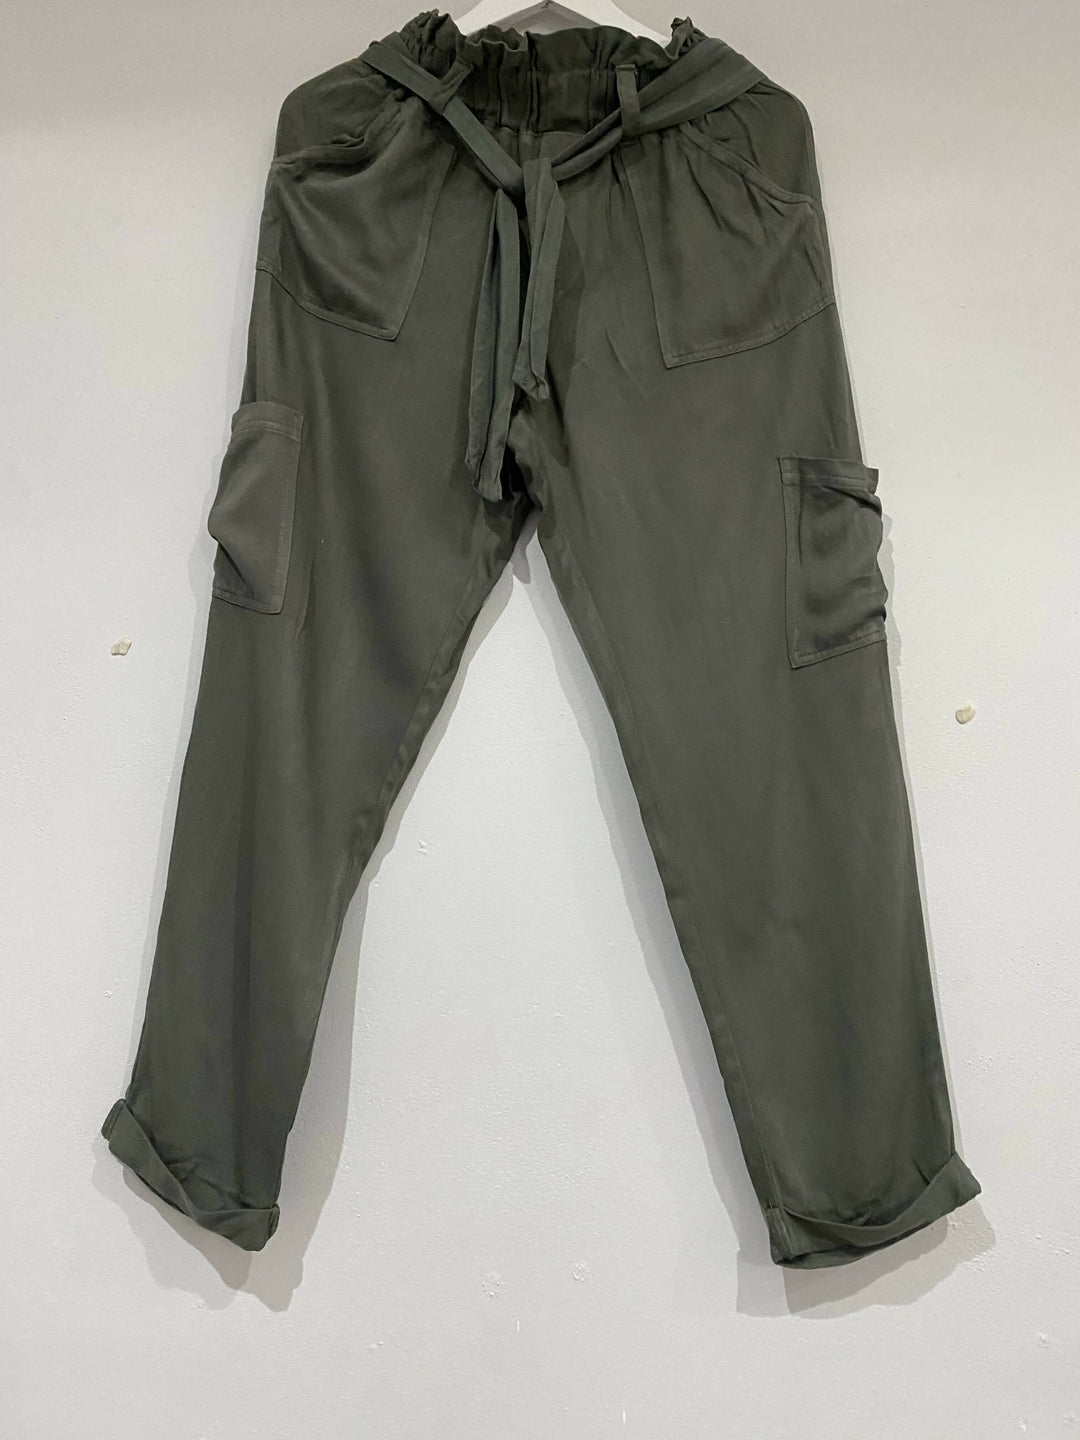 Image of Aeropostle Olive Cargo Pants